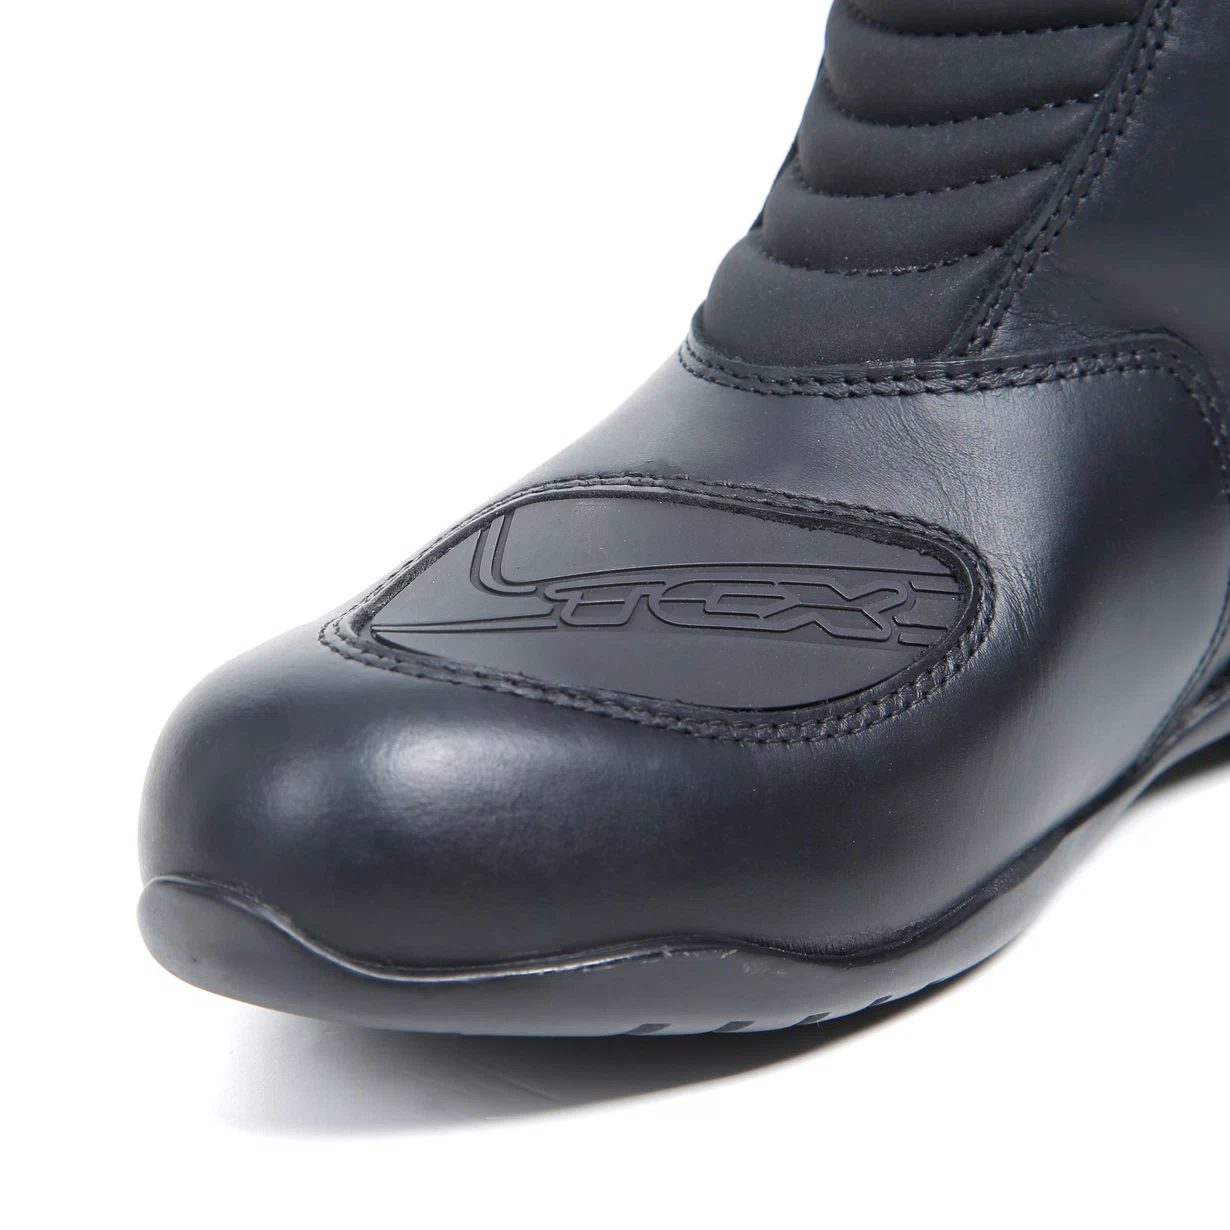 TCX Aura Plus Waterproof Ladies Boots